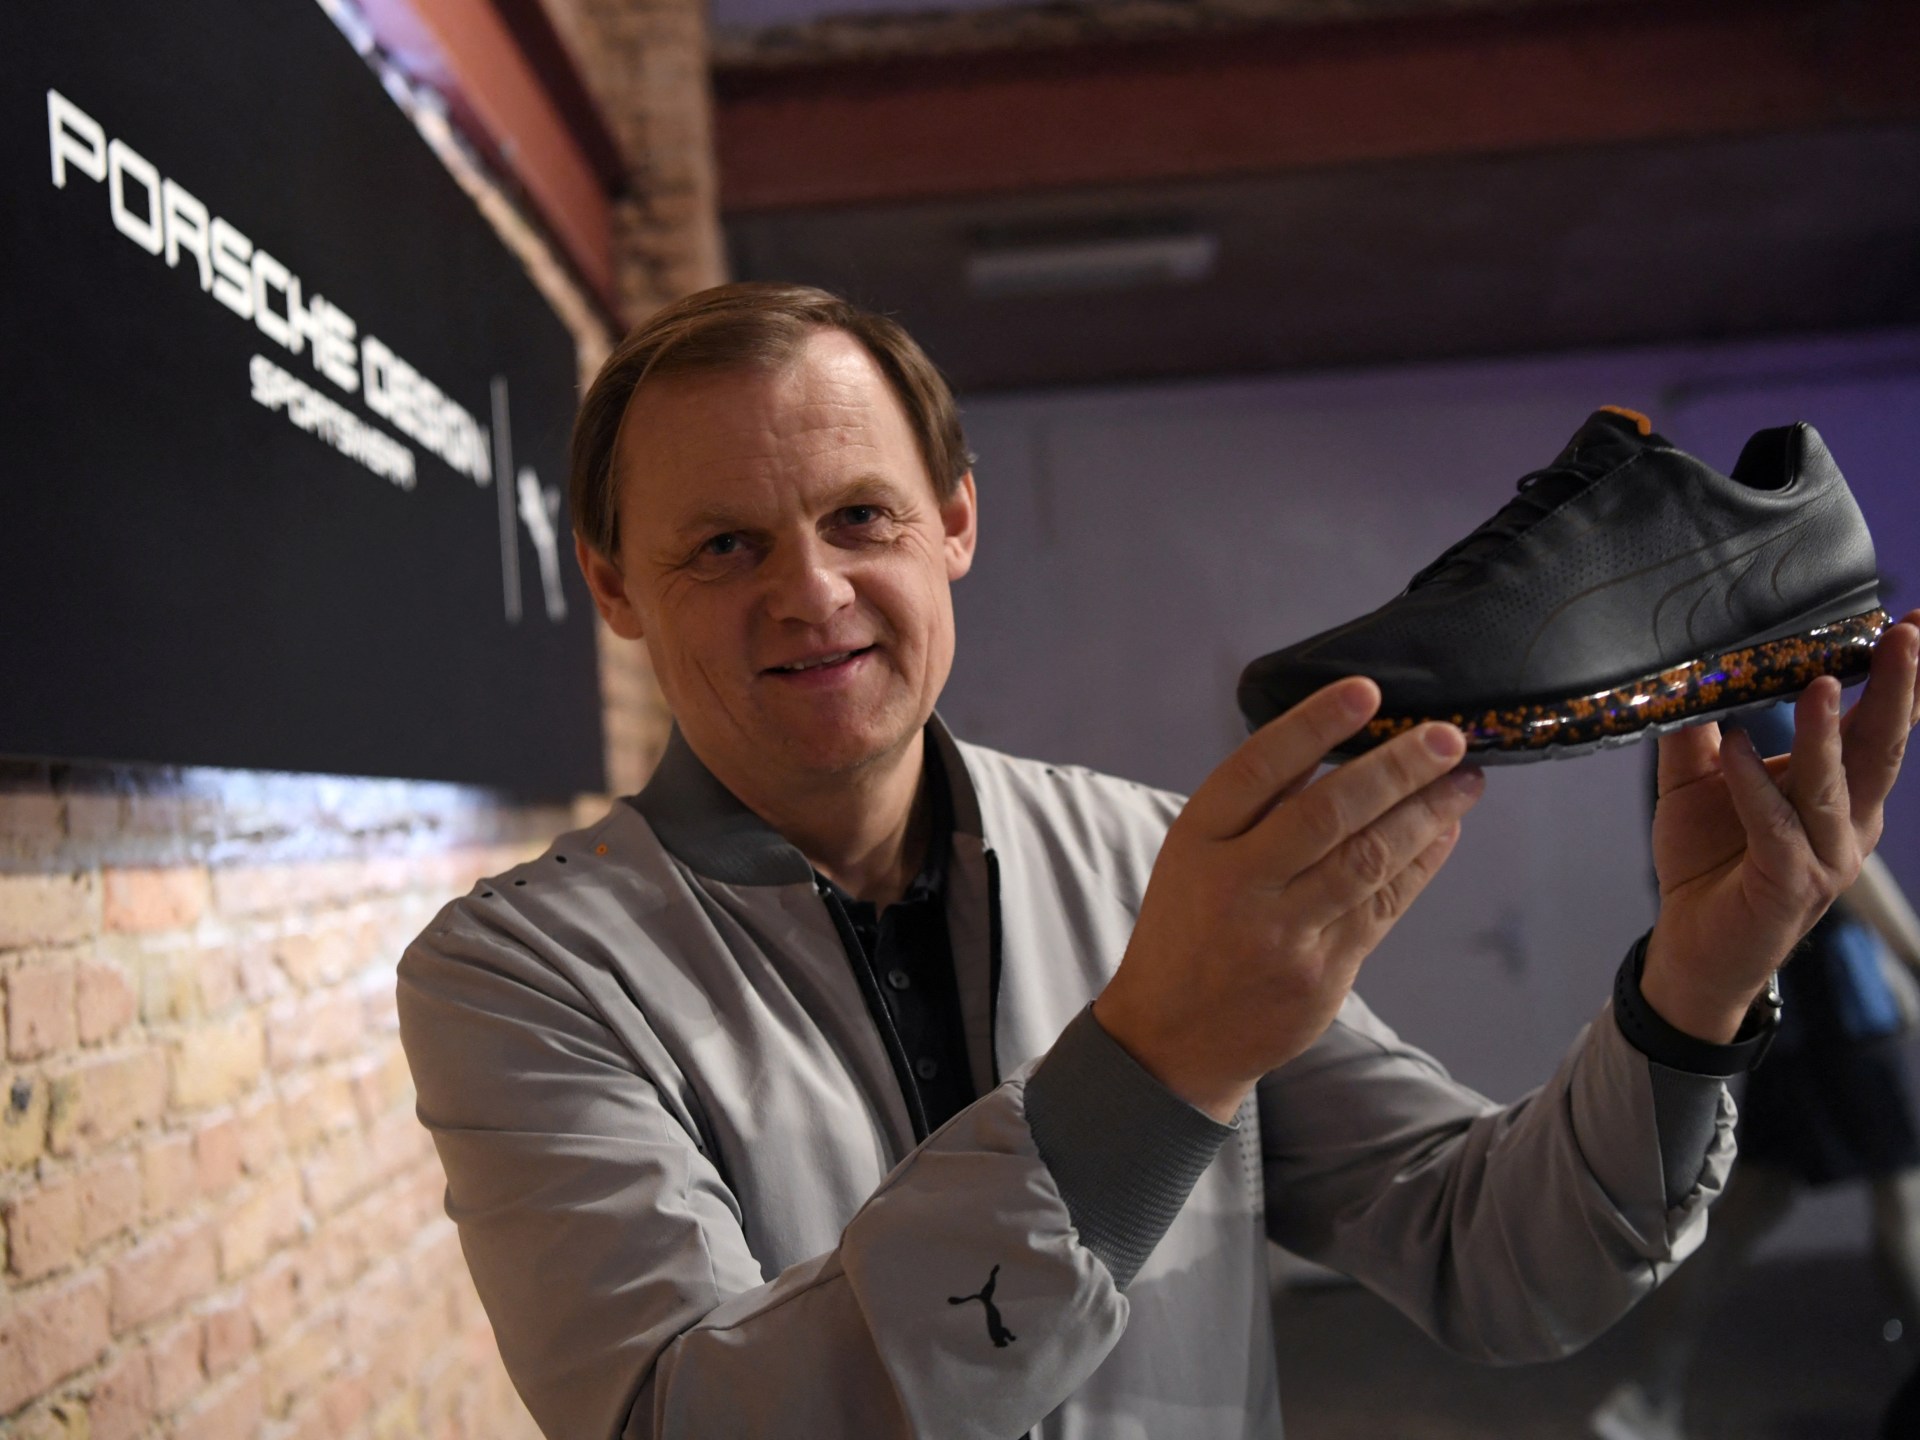 Puma-Chef Björn Gulden zum neuen Adidas-CEO |  Wirtschafts- und Wirtschaftsnachrichten